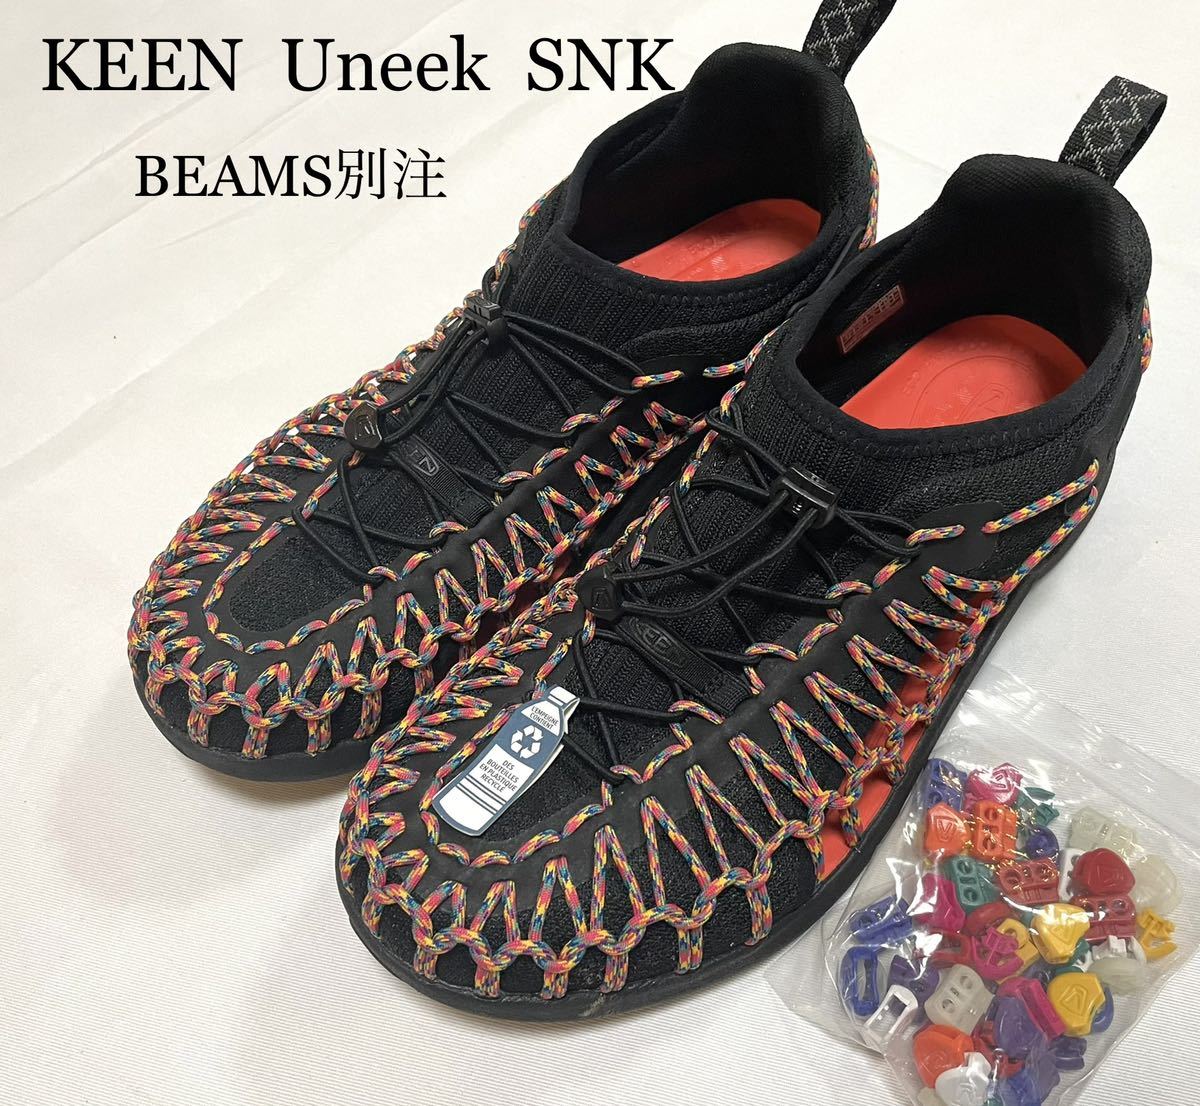 新品未使用 KEEN BEAMS別注 ユニーク スニーカー uneek SNK 28cm☆RHC ロンハーマン キャンプ フェス サンダル